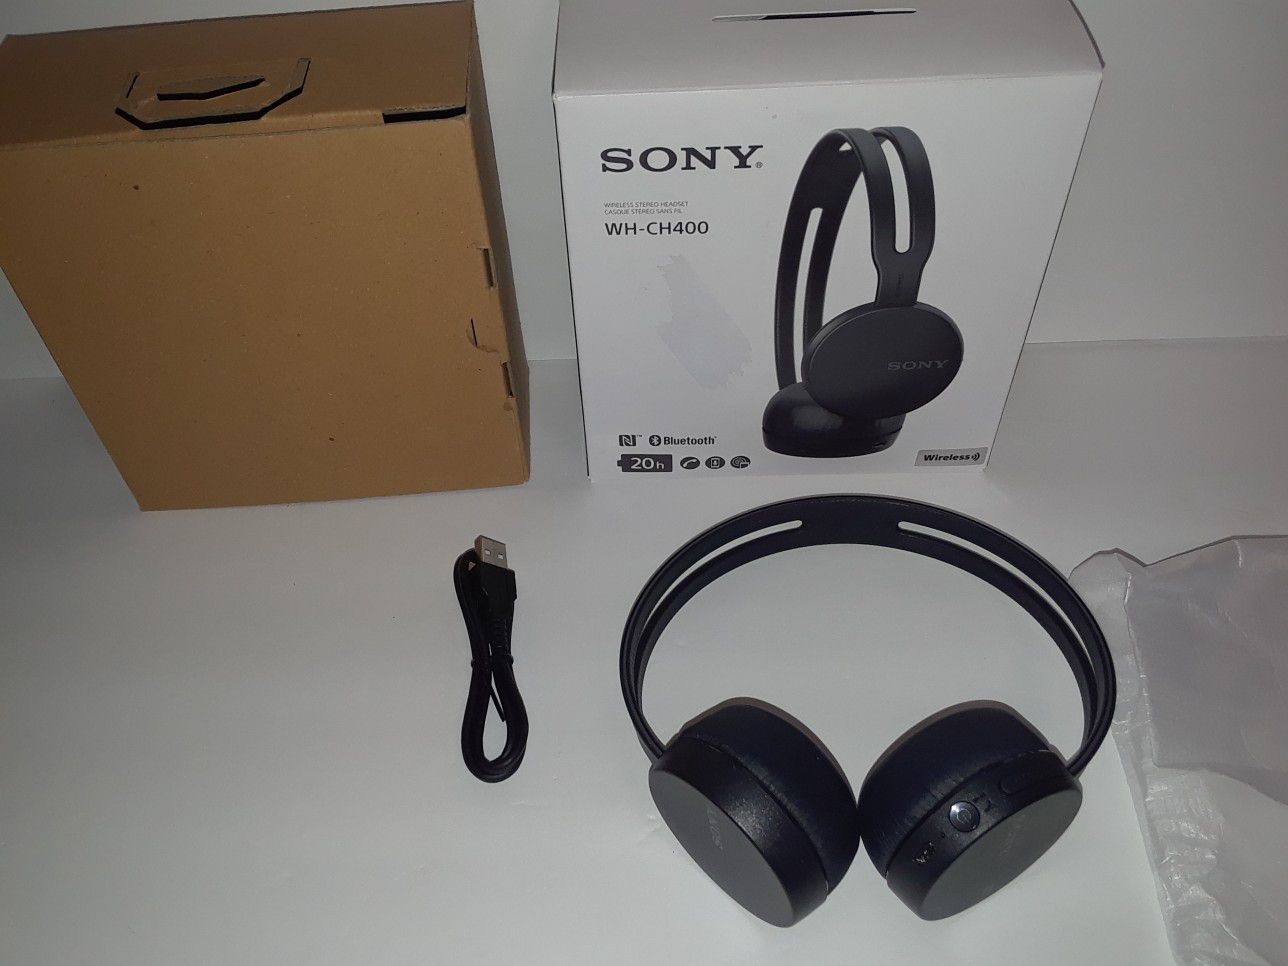 Sony Bluetooth headphones. Plus I deliver.